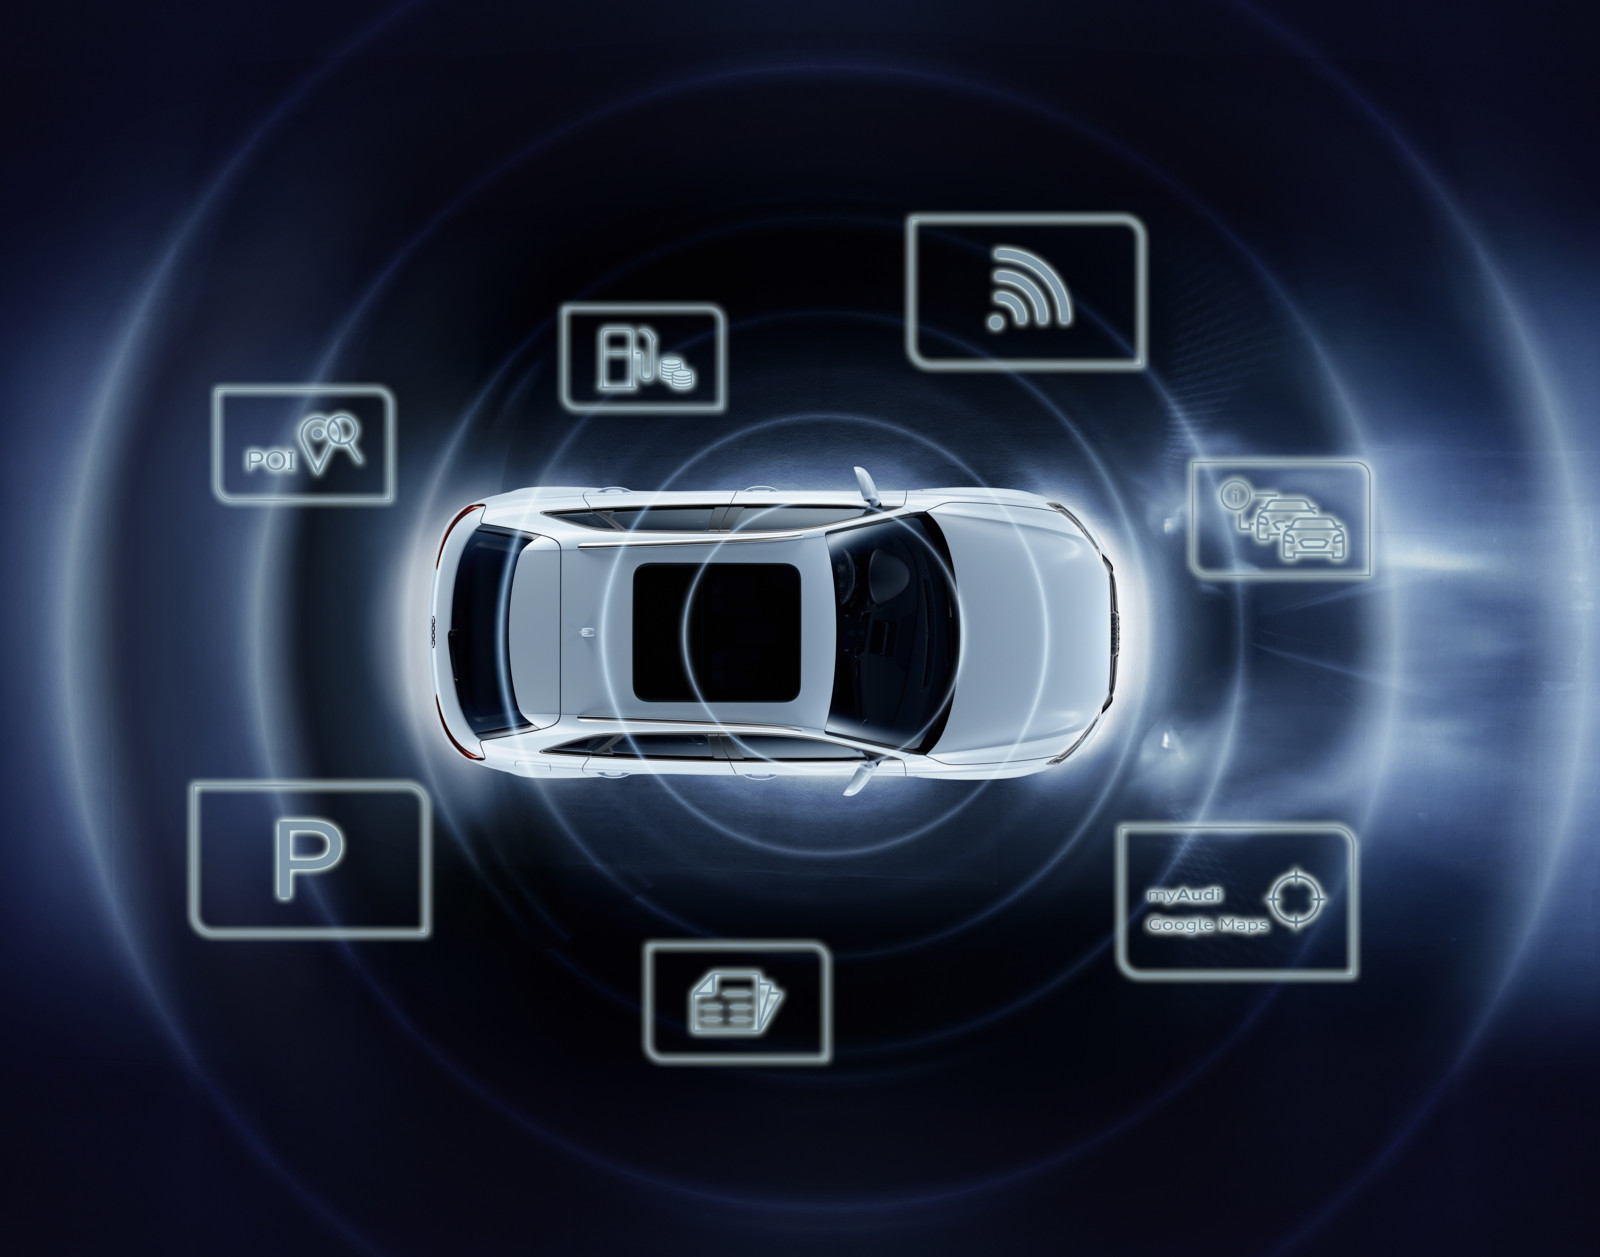 Vernetzung und arbeitsgerechte Konnektivität im Auto entwickeln sich rasant. Apps spielen dabei eine große Rolle.